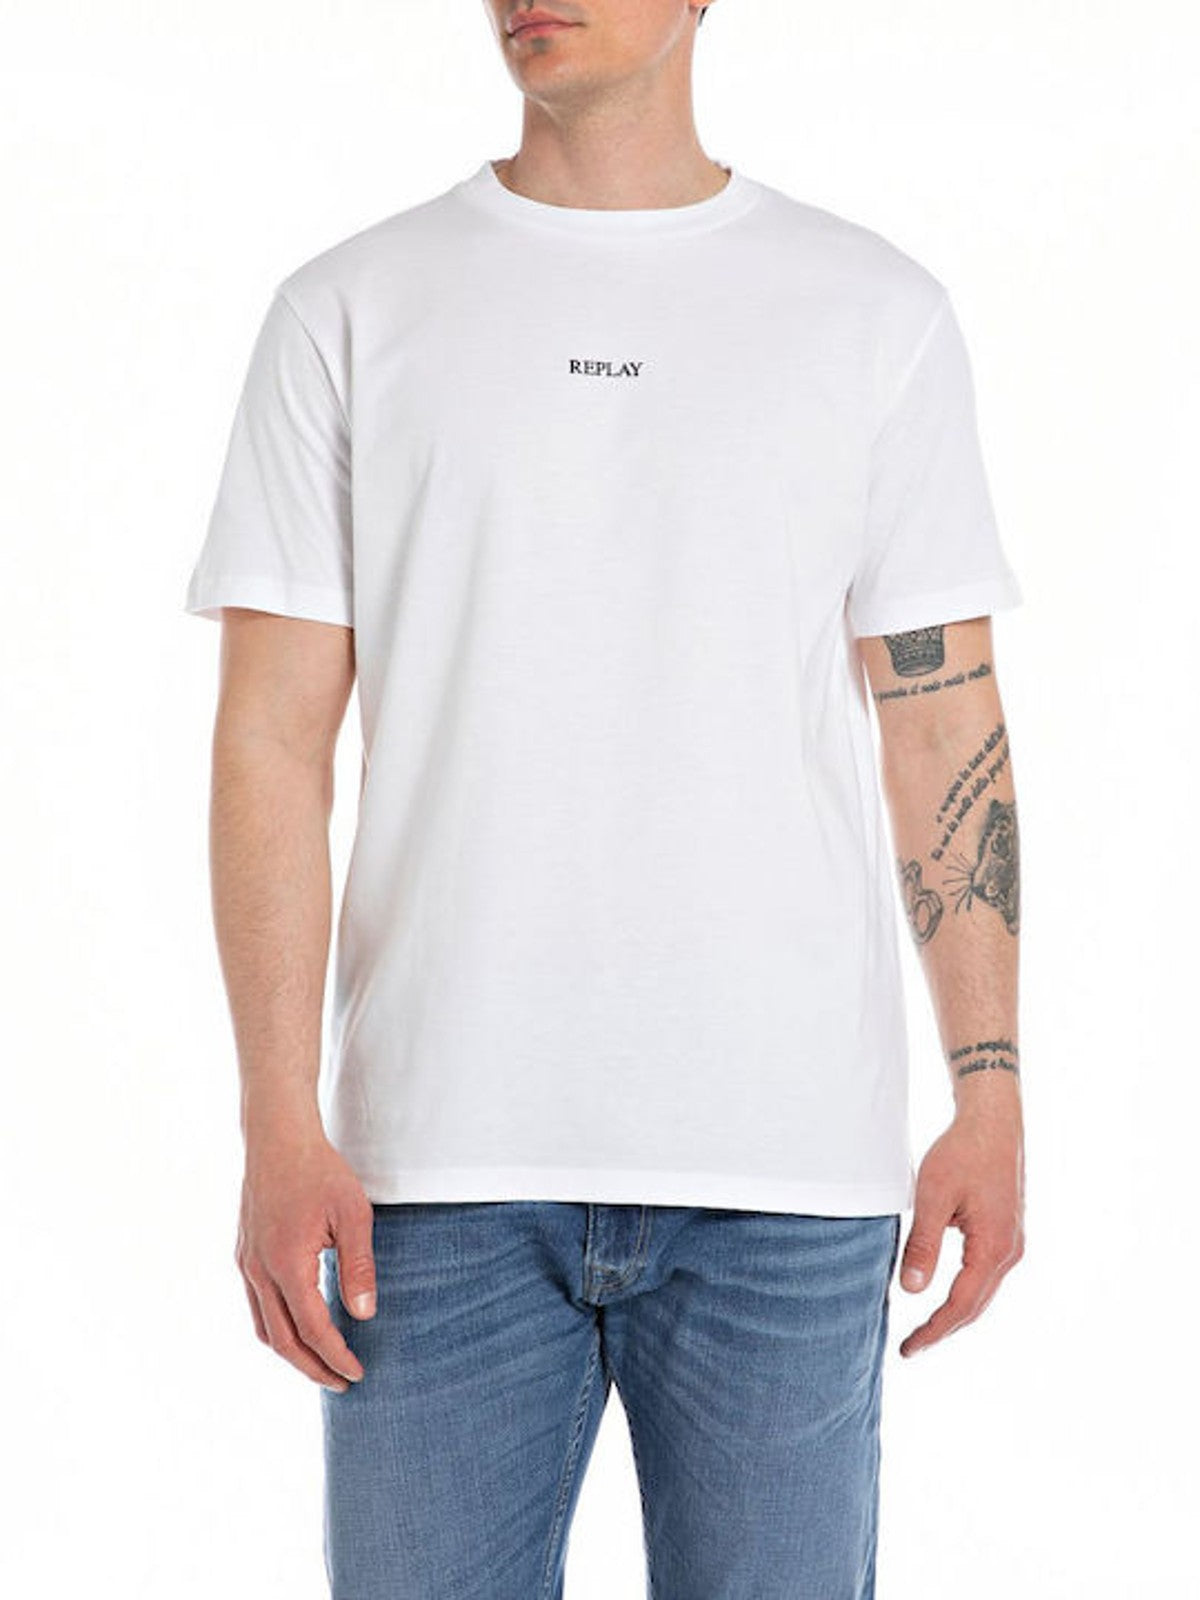 White Branded T-Shirt